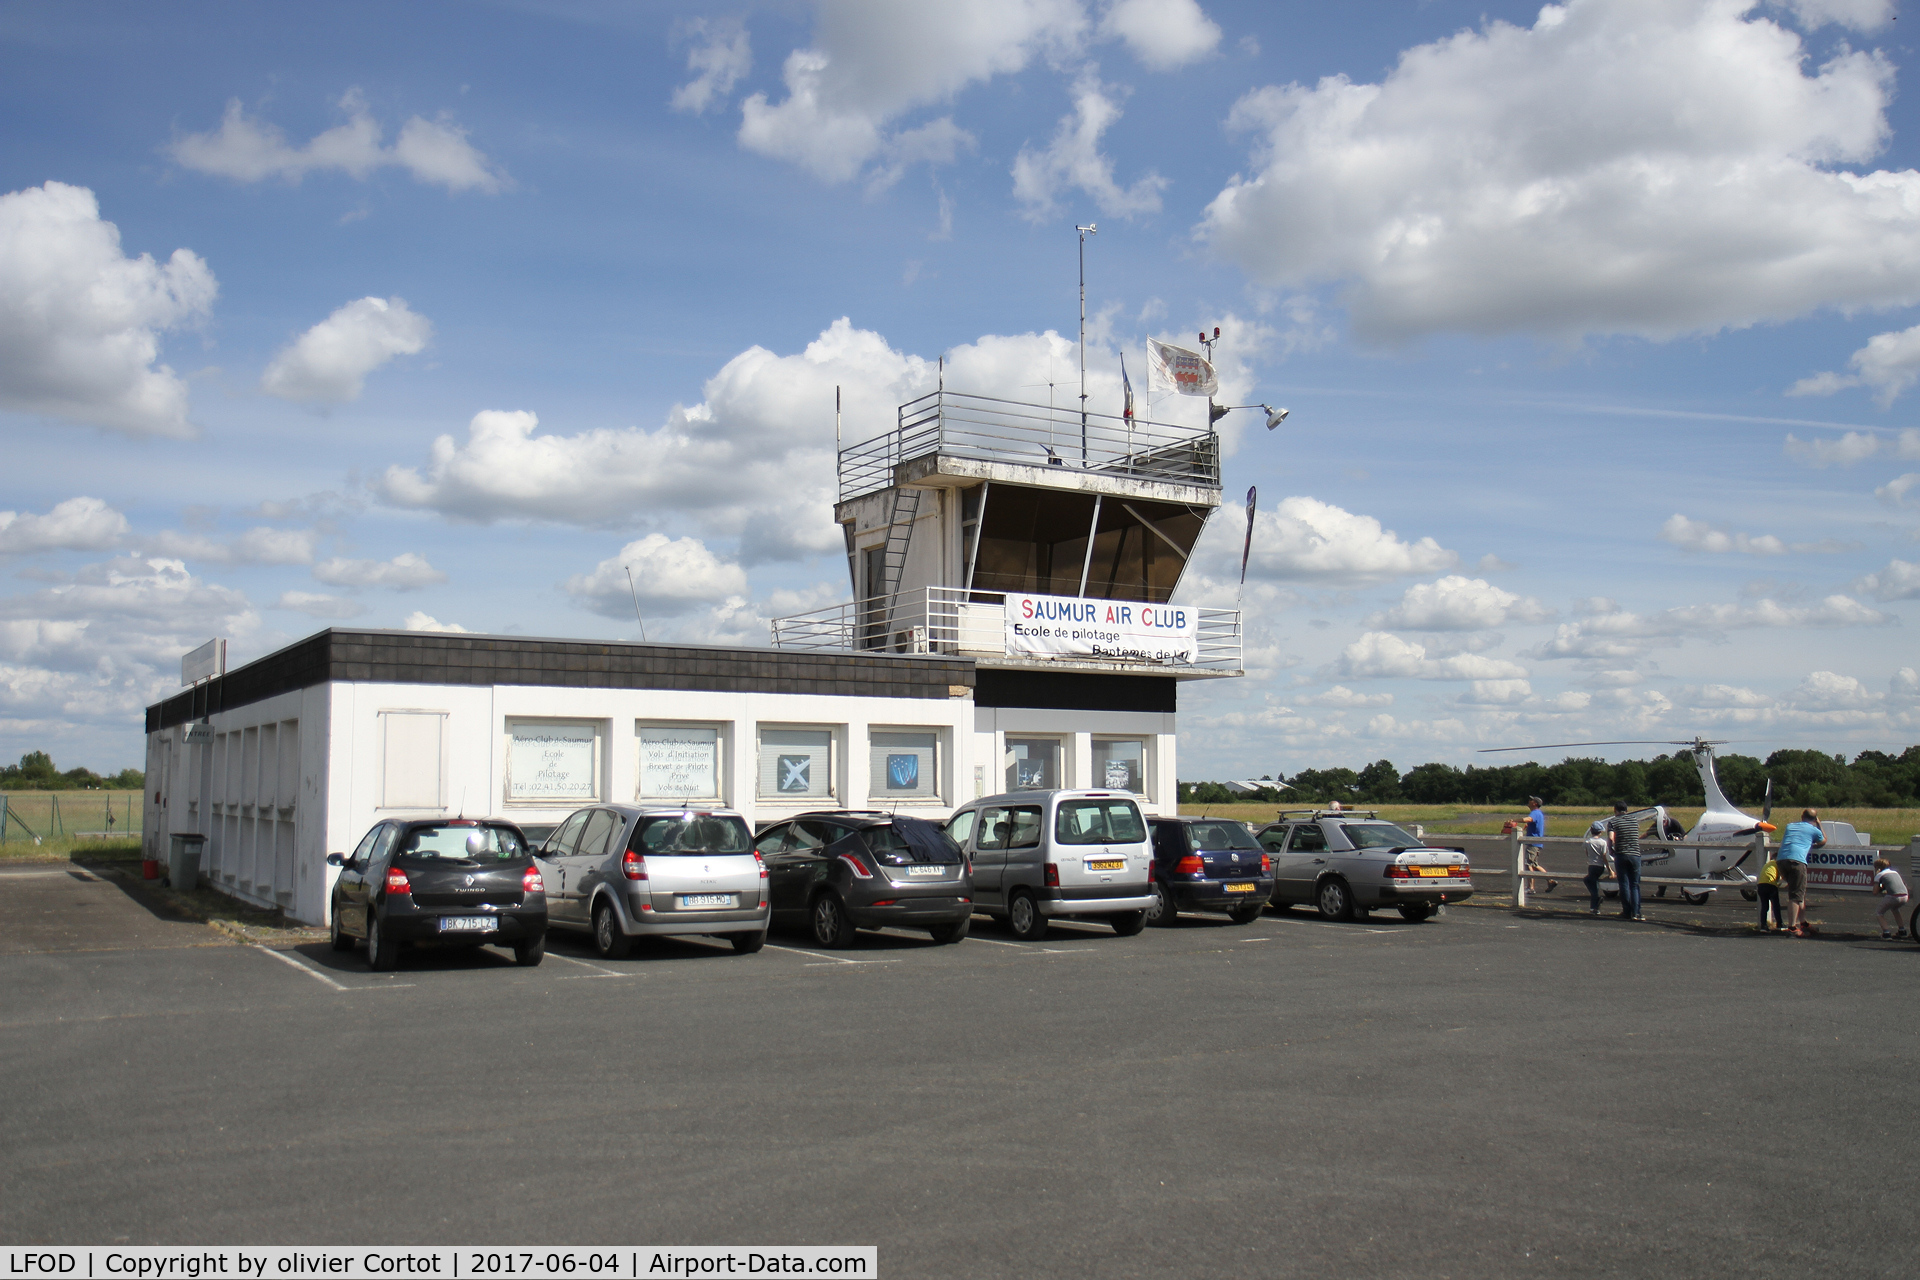 Saumur Saint-Florent Airport, Saumur France (LFOD) - the control tower
